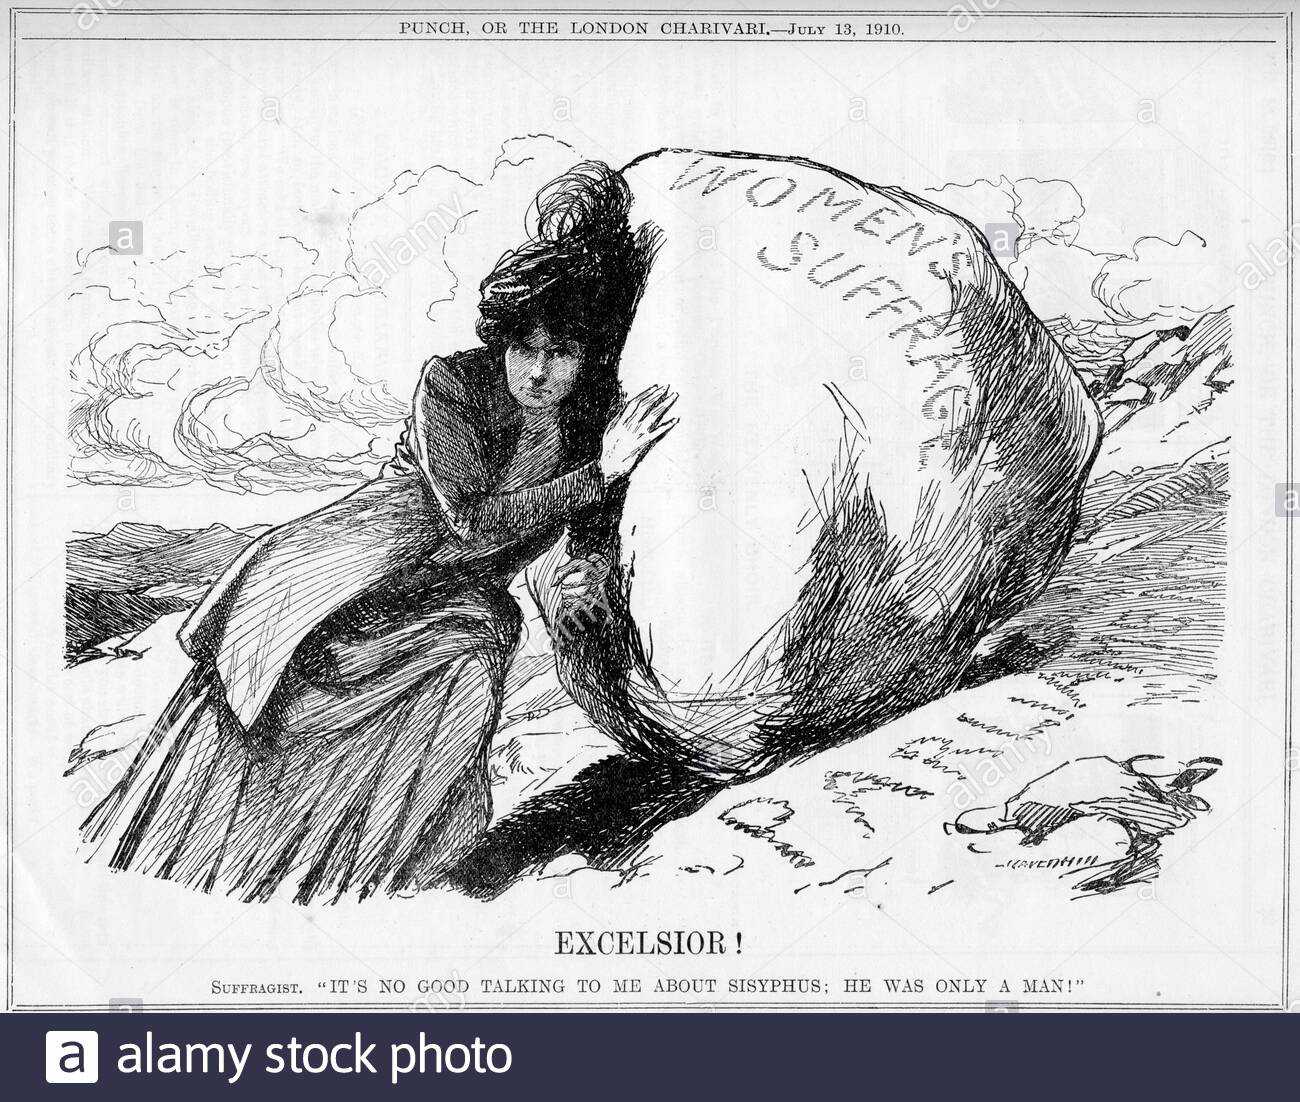 dessin-anime-excelsior-une-suffragette-representee-par-sisyphus-poussant-le-grand-bloc-du-suffrage-des-femmes-sur-la-colline-du-parlement-ce-n-est-pas-bon-de-me-parler-de-sisyphus-il-n-etait-qu-un.jpg